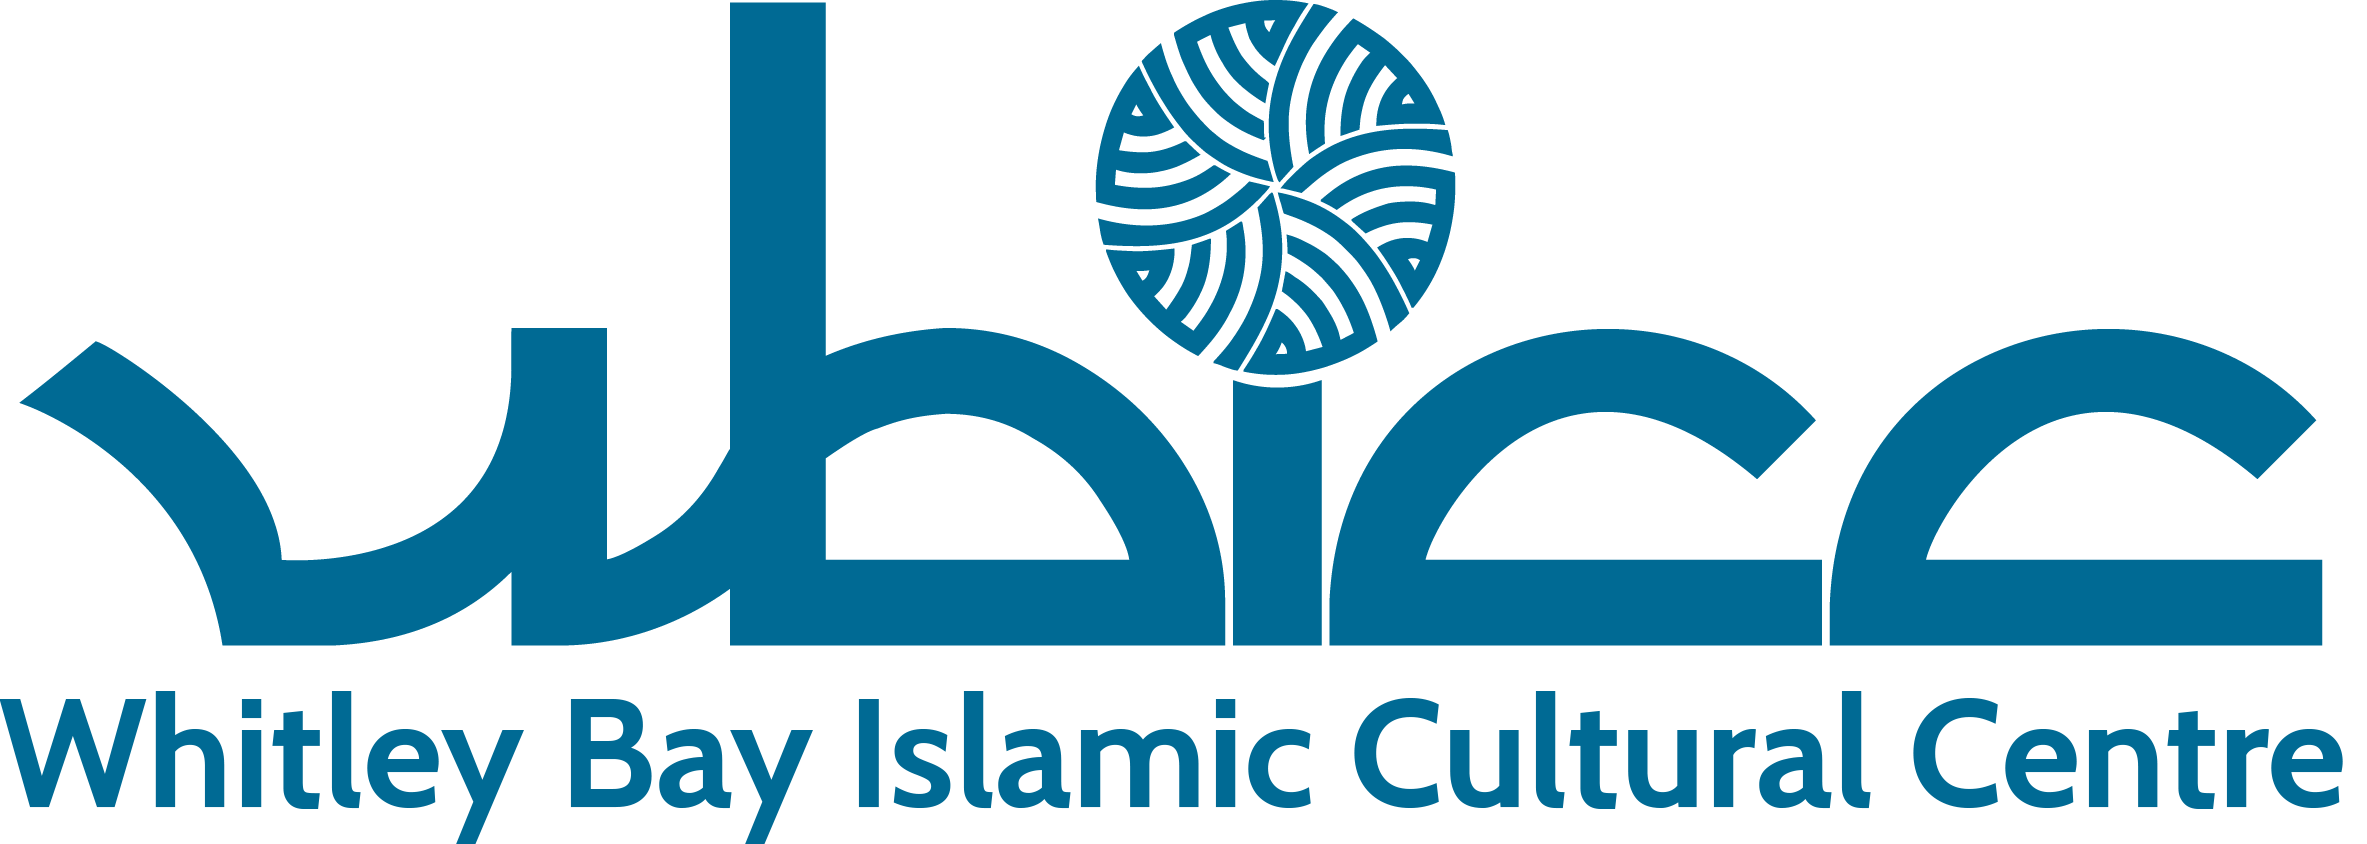 WBICC Logo - Colour